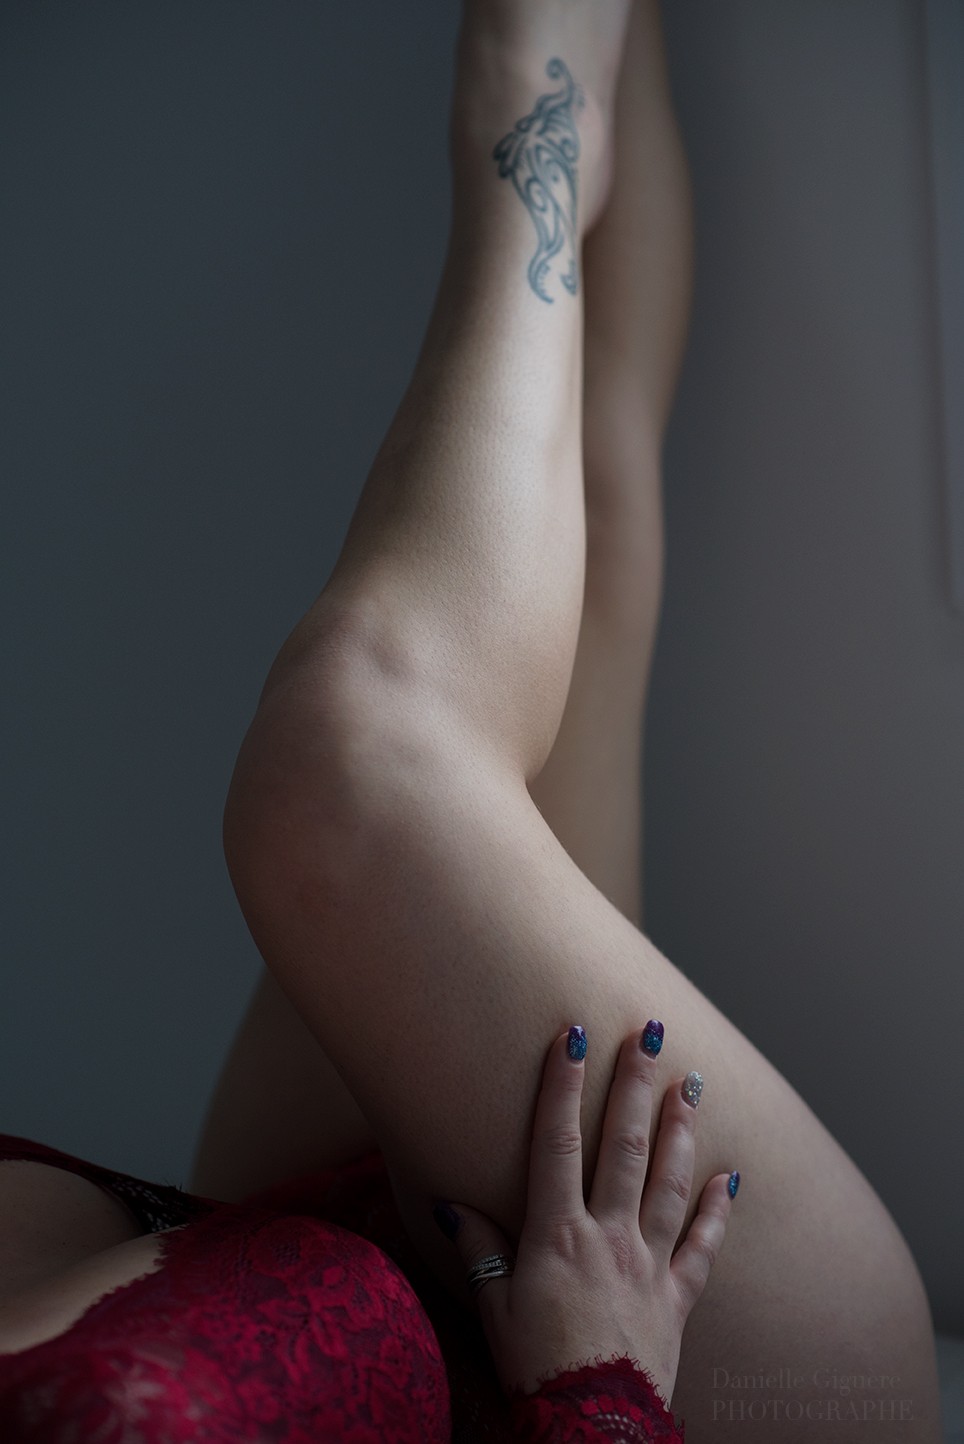 Les jambes d’une femme… toujours emblème de féminité / photo sensuelle